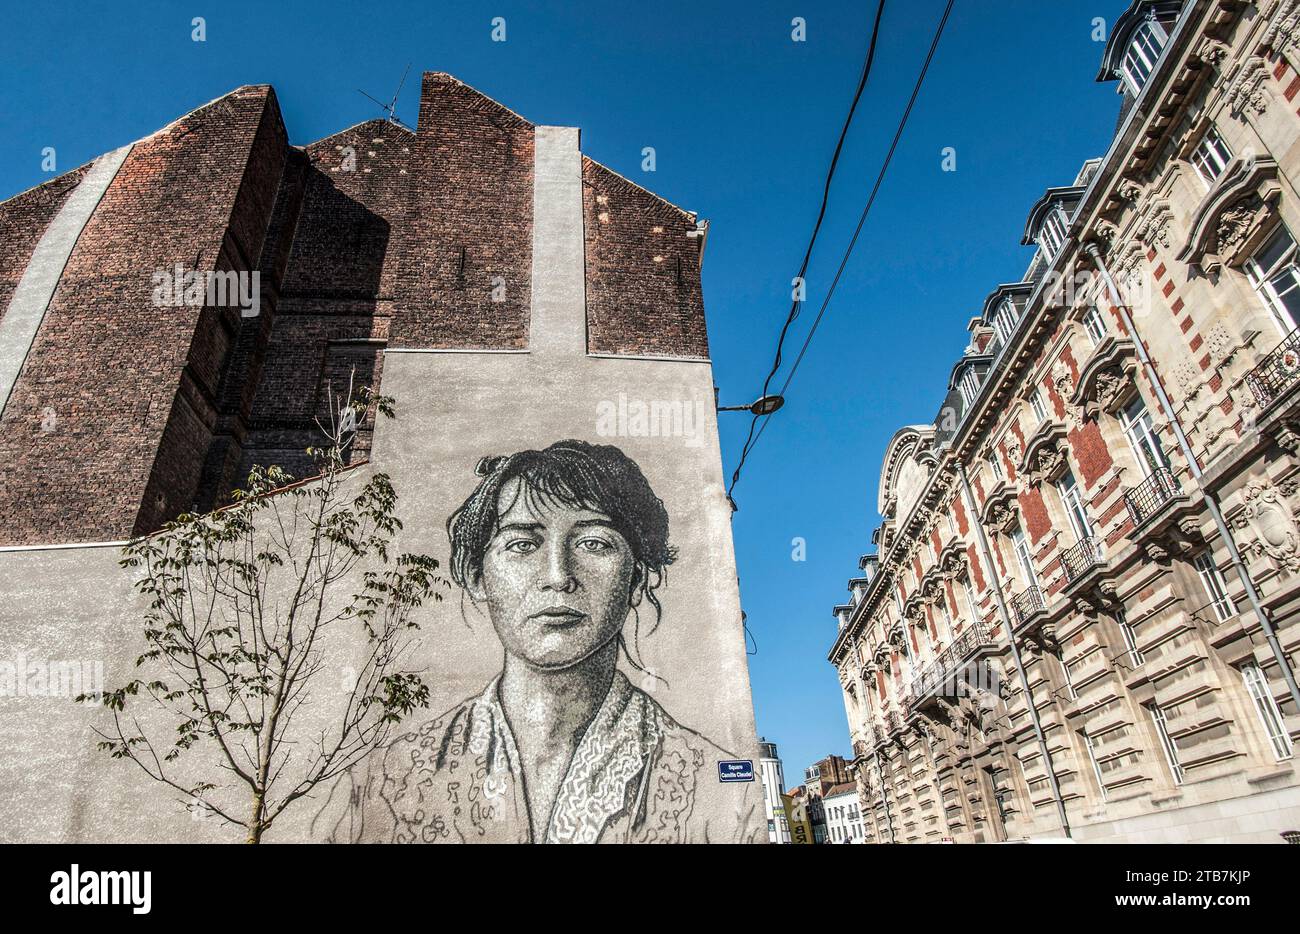 Roubaix (Nordfrankreich): Wandgemälde mit dem Porträt des Bildhauers Camille Claudel vom australischen Straßenkünstler Jimmy C im „Square Camille Claudel“ Stockfoto